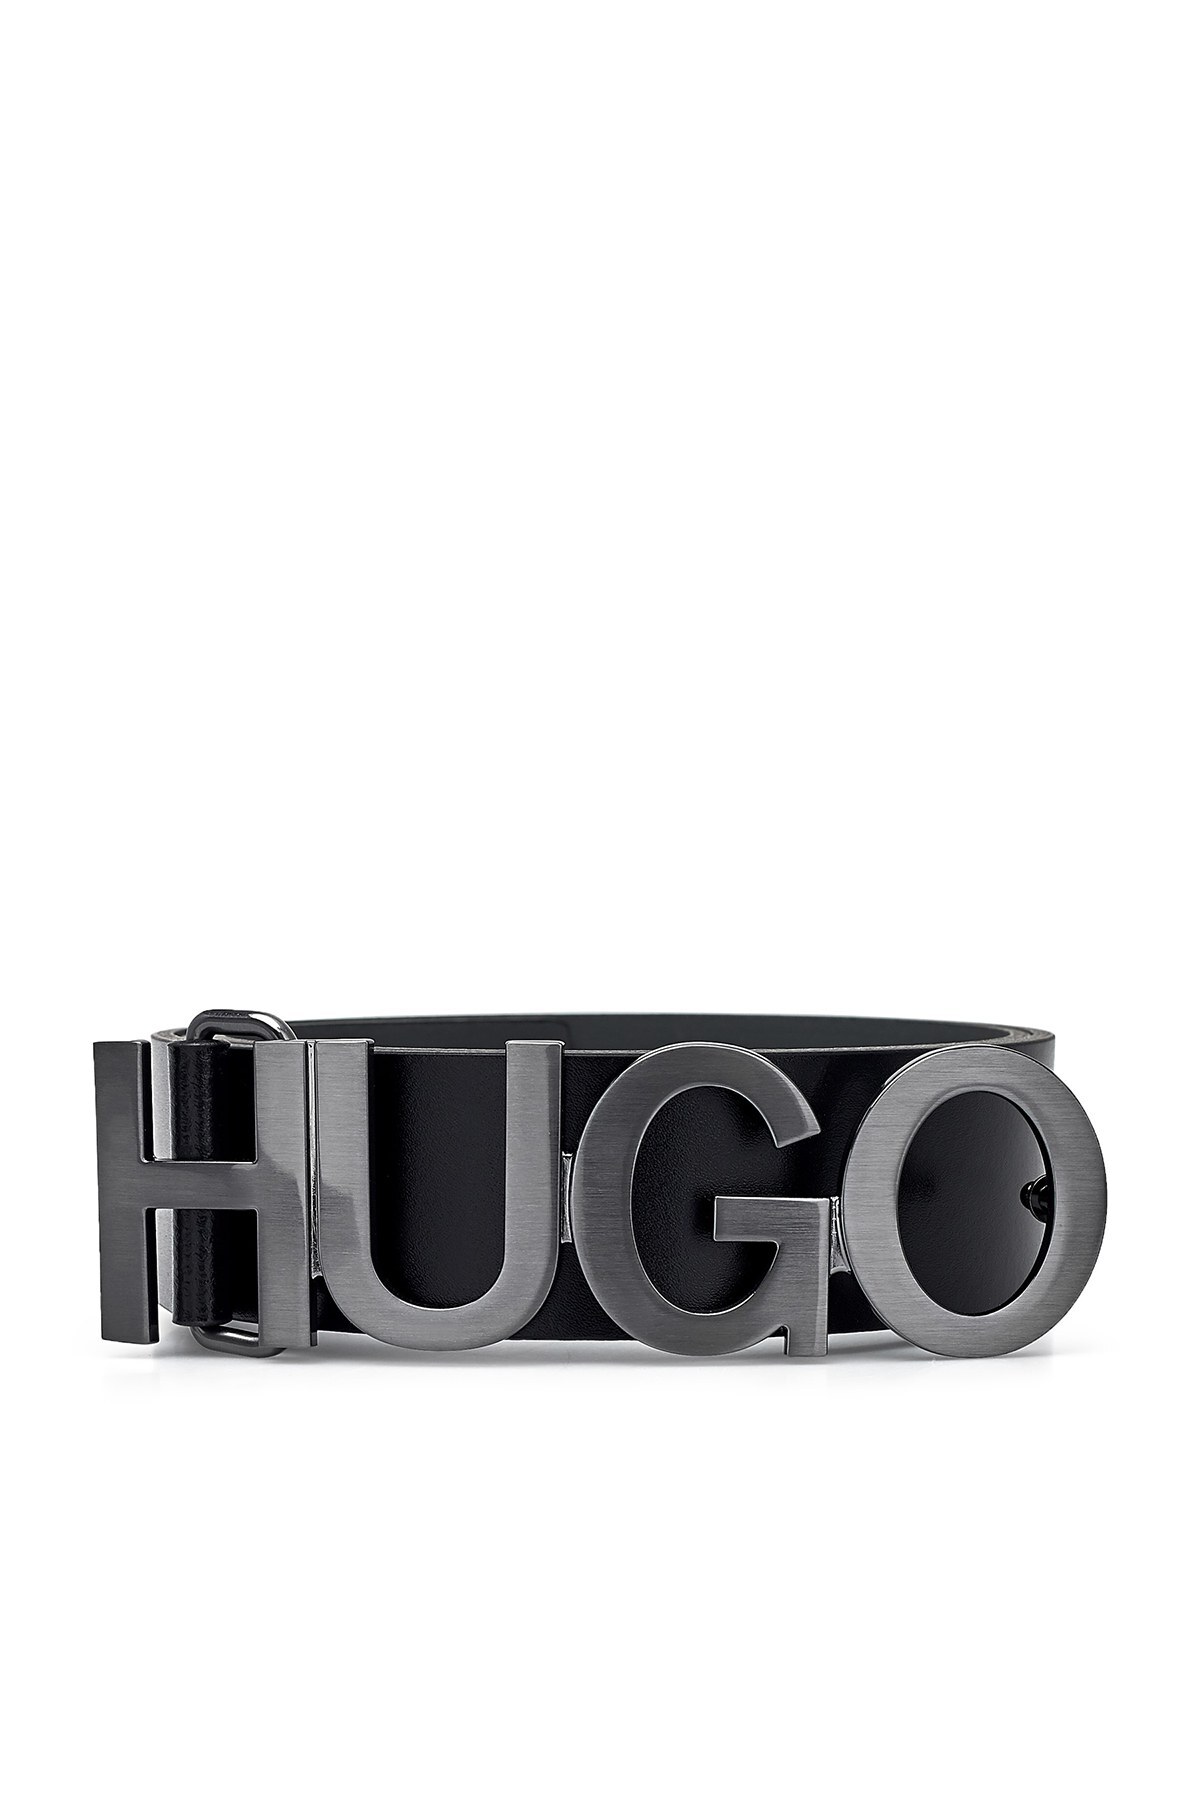 Hugo Boss Deri Erkek Kemer 50452149 001 SİYAH